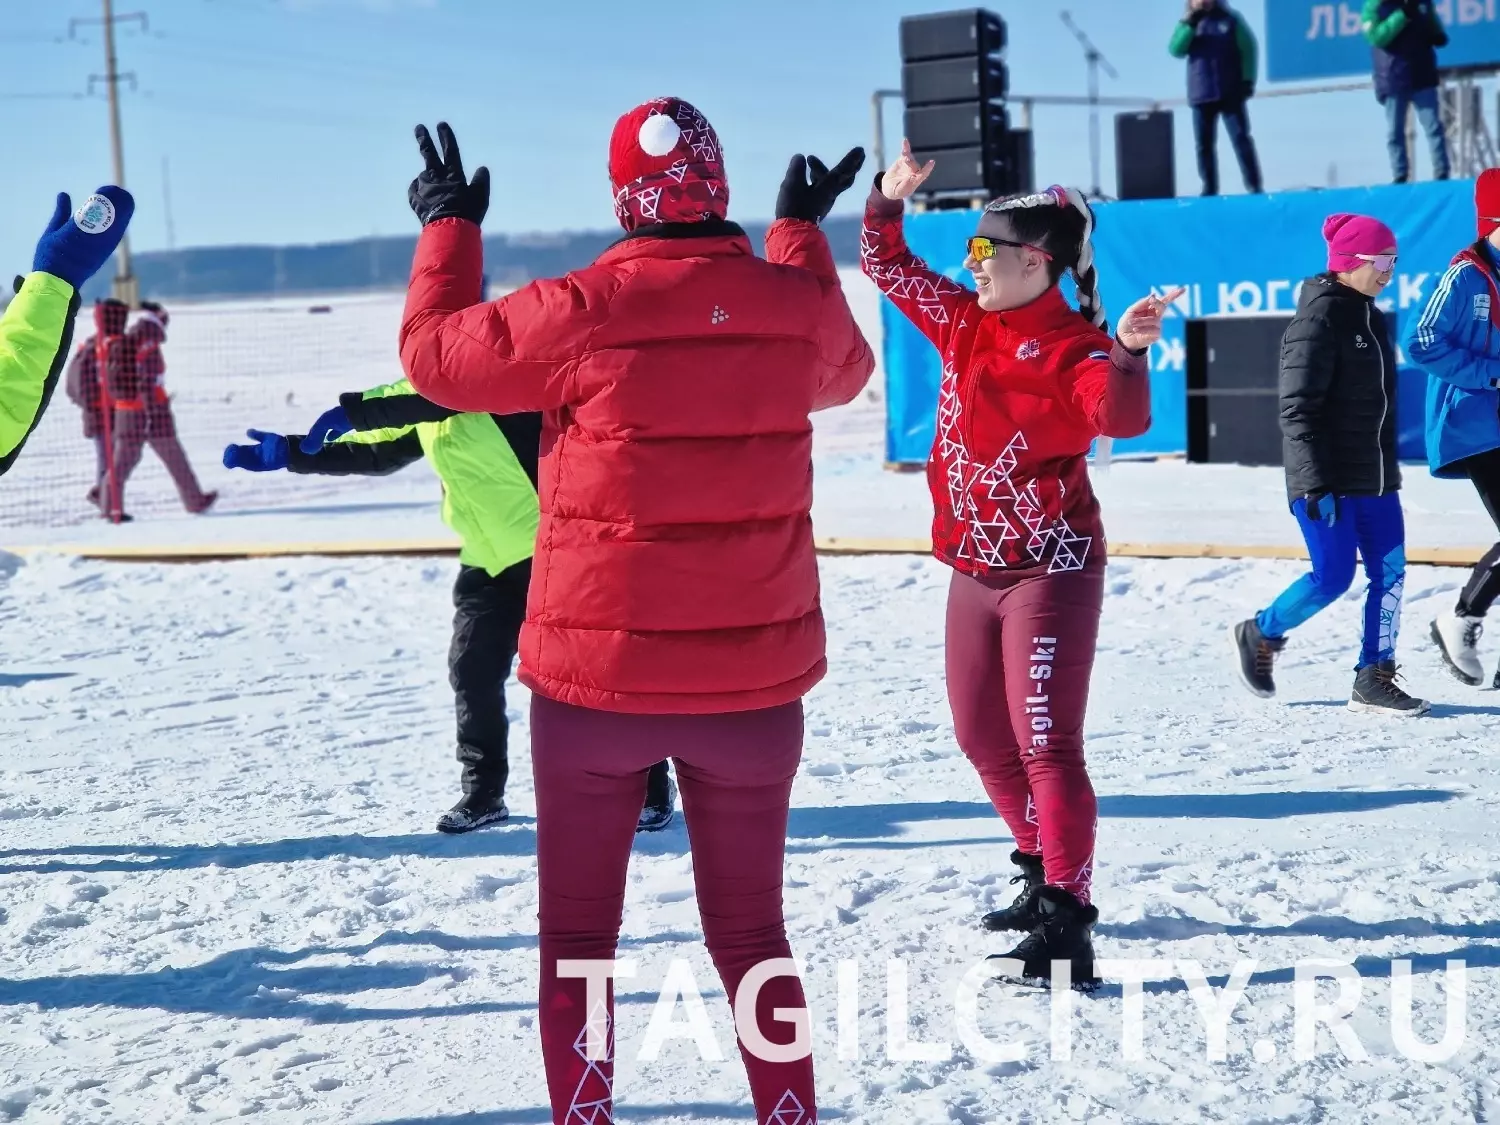 Участники XI Югорского лыжного марафона в Ханты-Мансийске.